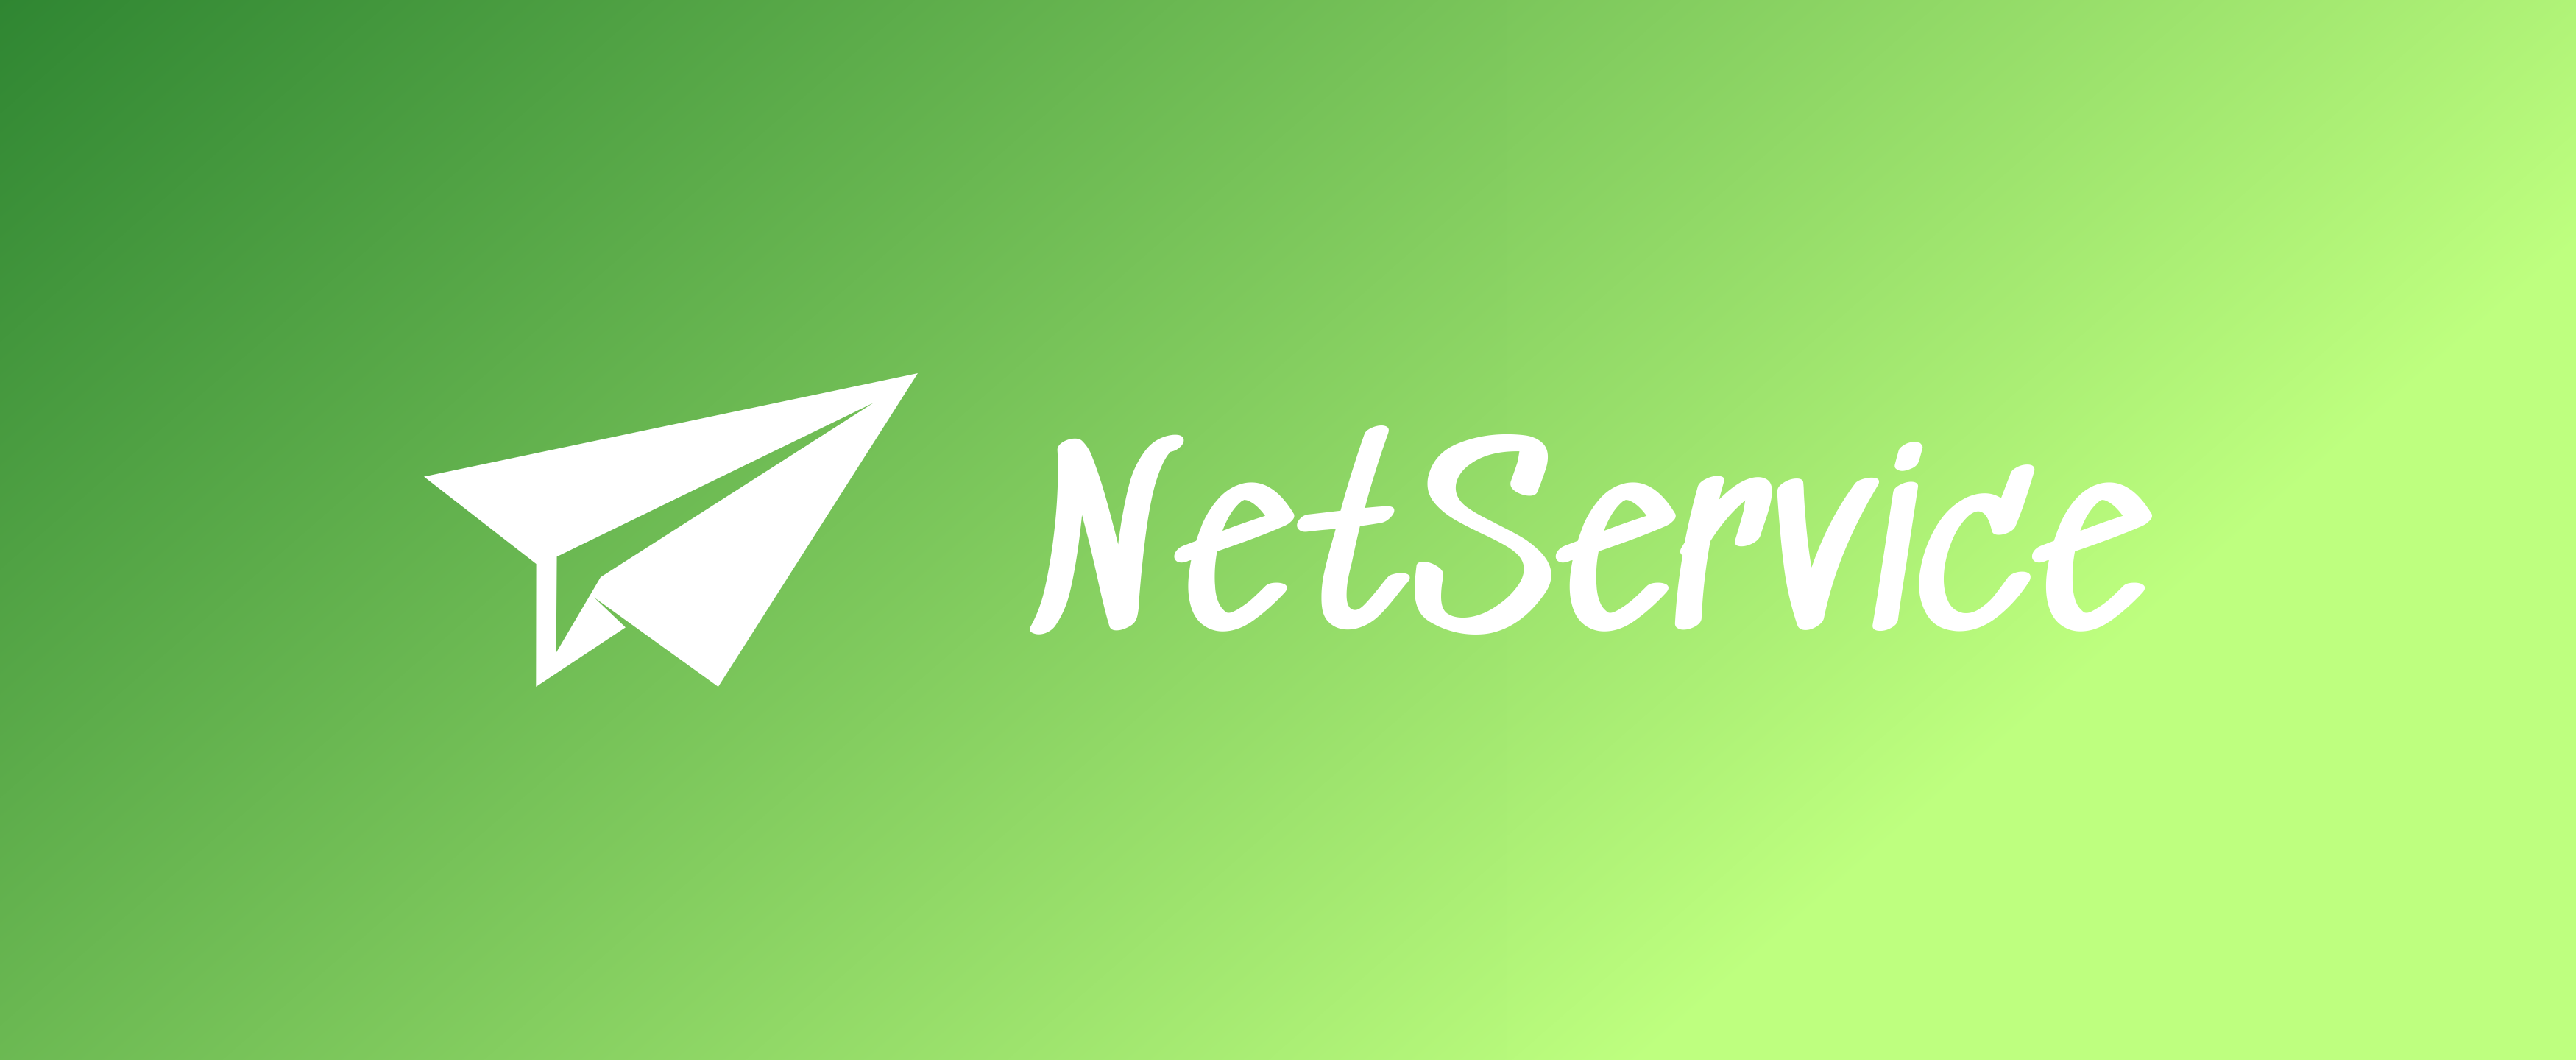 NetService